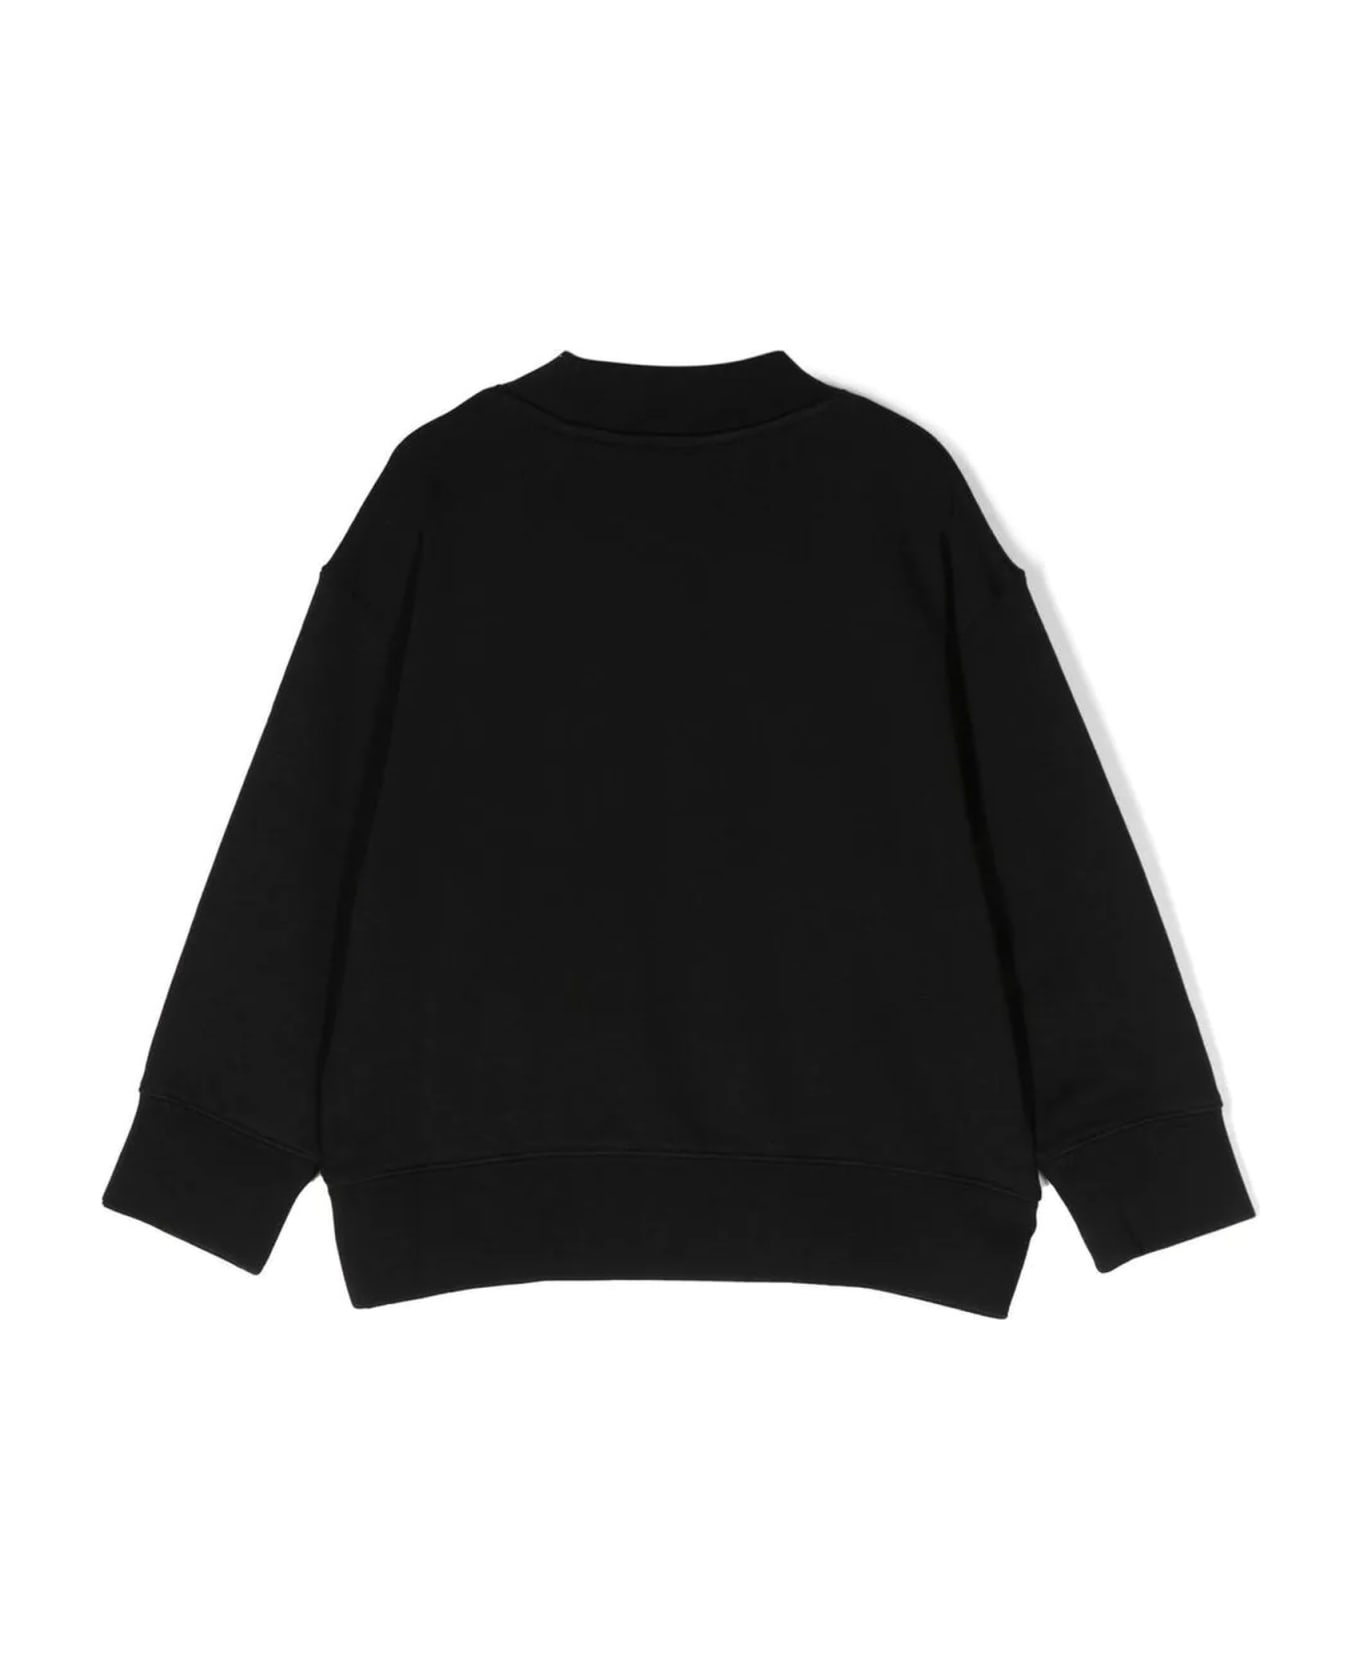 Palm Angels Black Cotton Sweatshirt - Black White ニットウェア＆スウェットシャツ